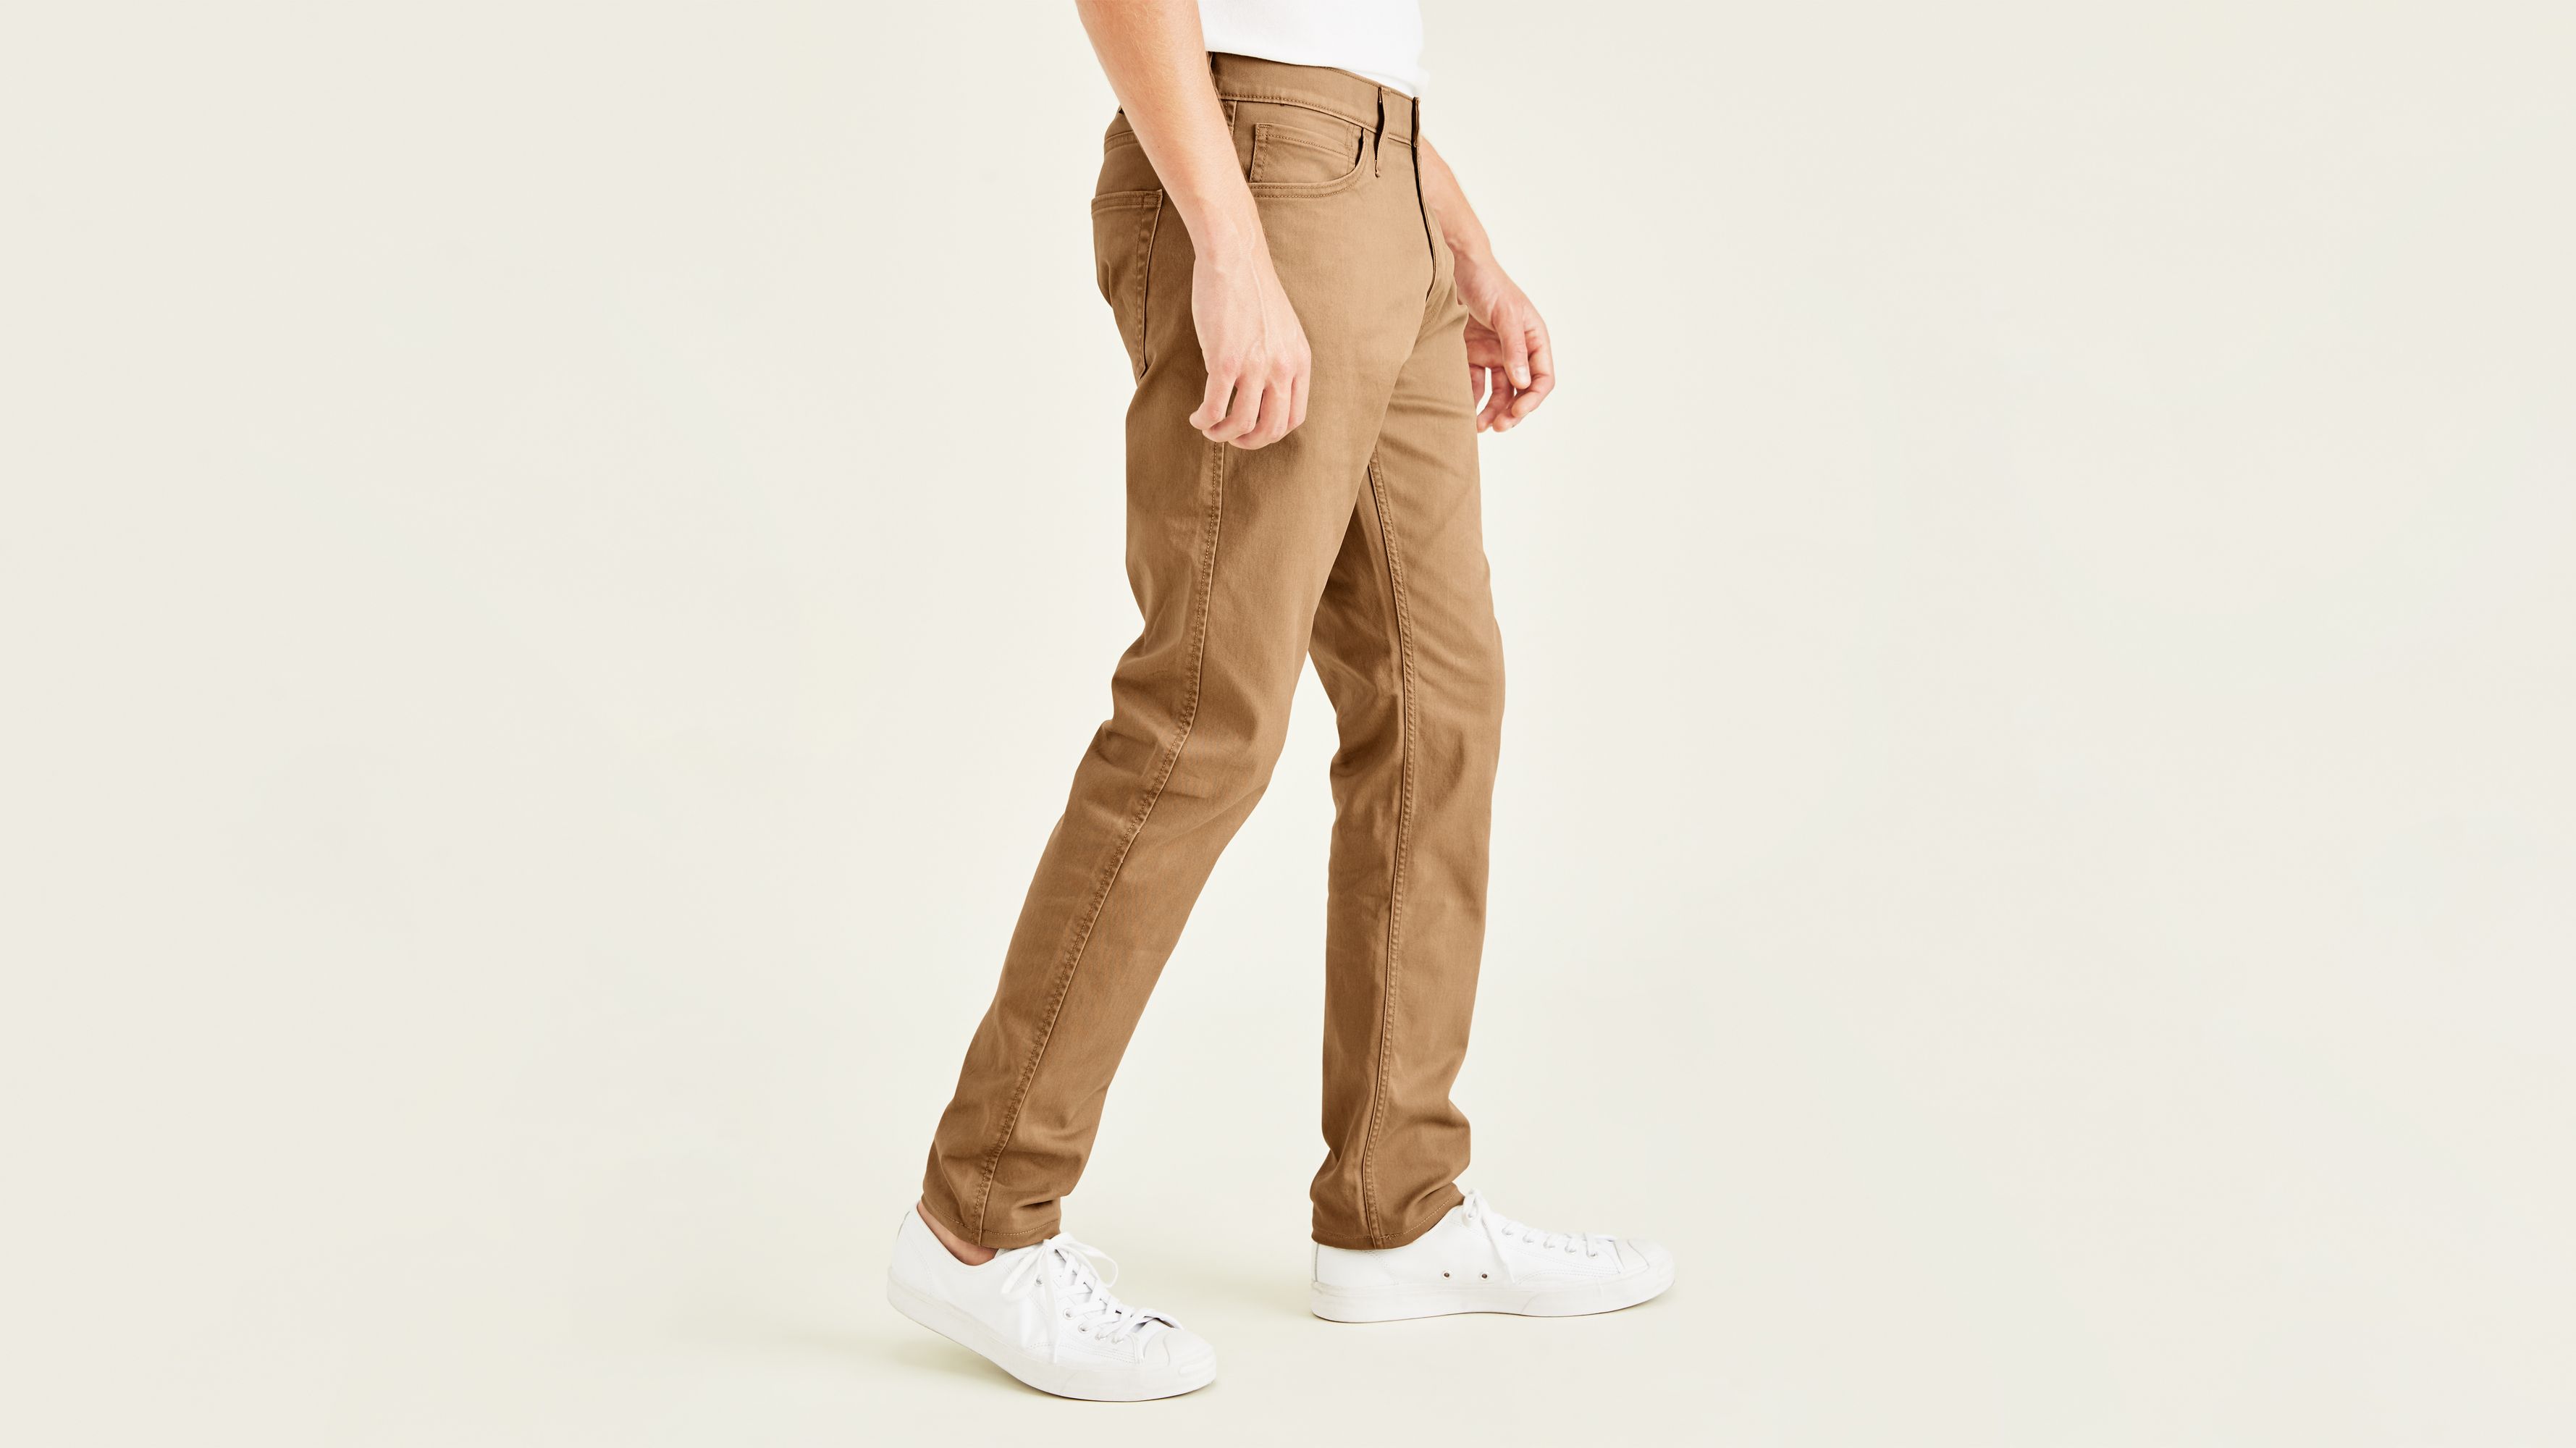 dockers men's slim fit jean cut all seasons tech pants